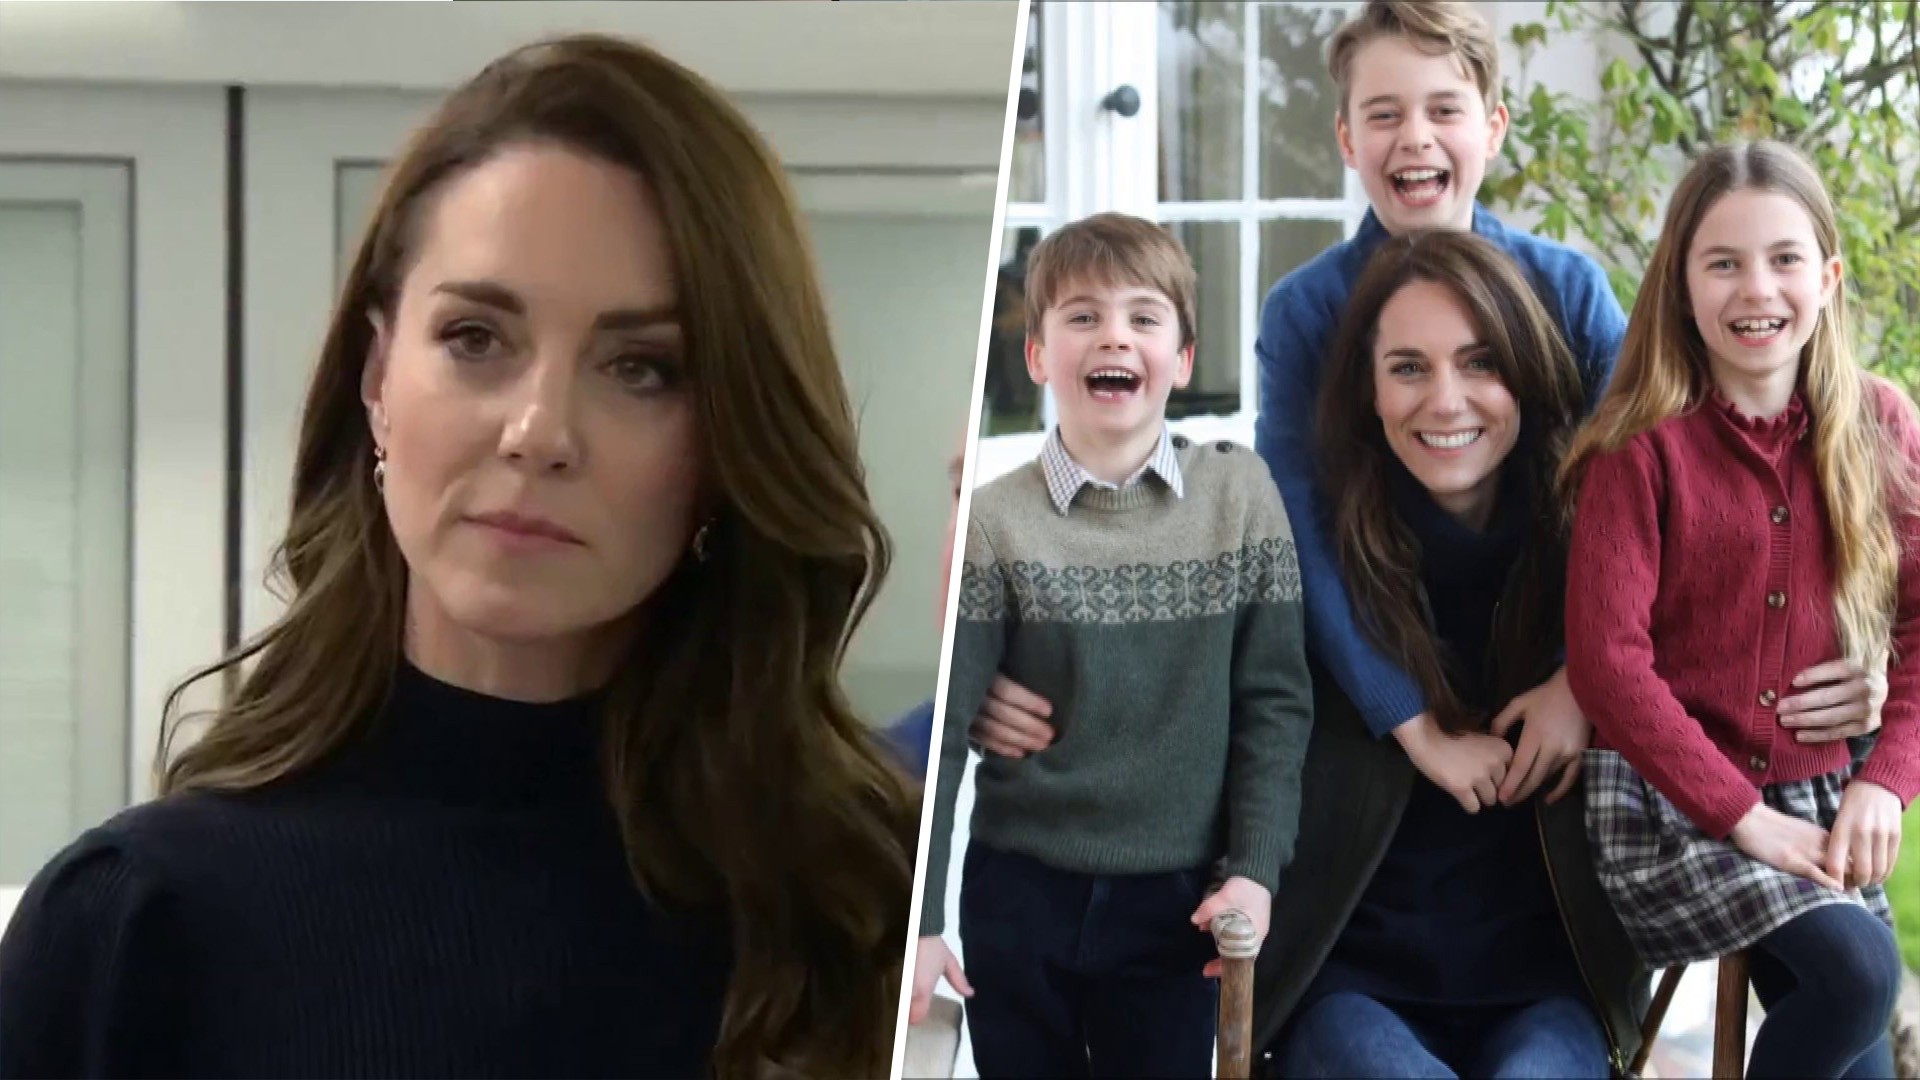 Kate Middleton addresses family photo that sparked backlash